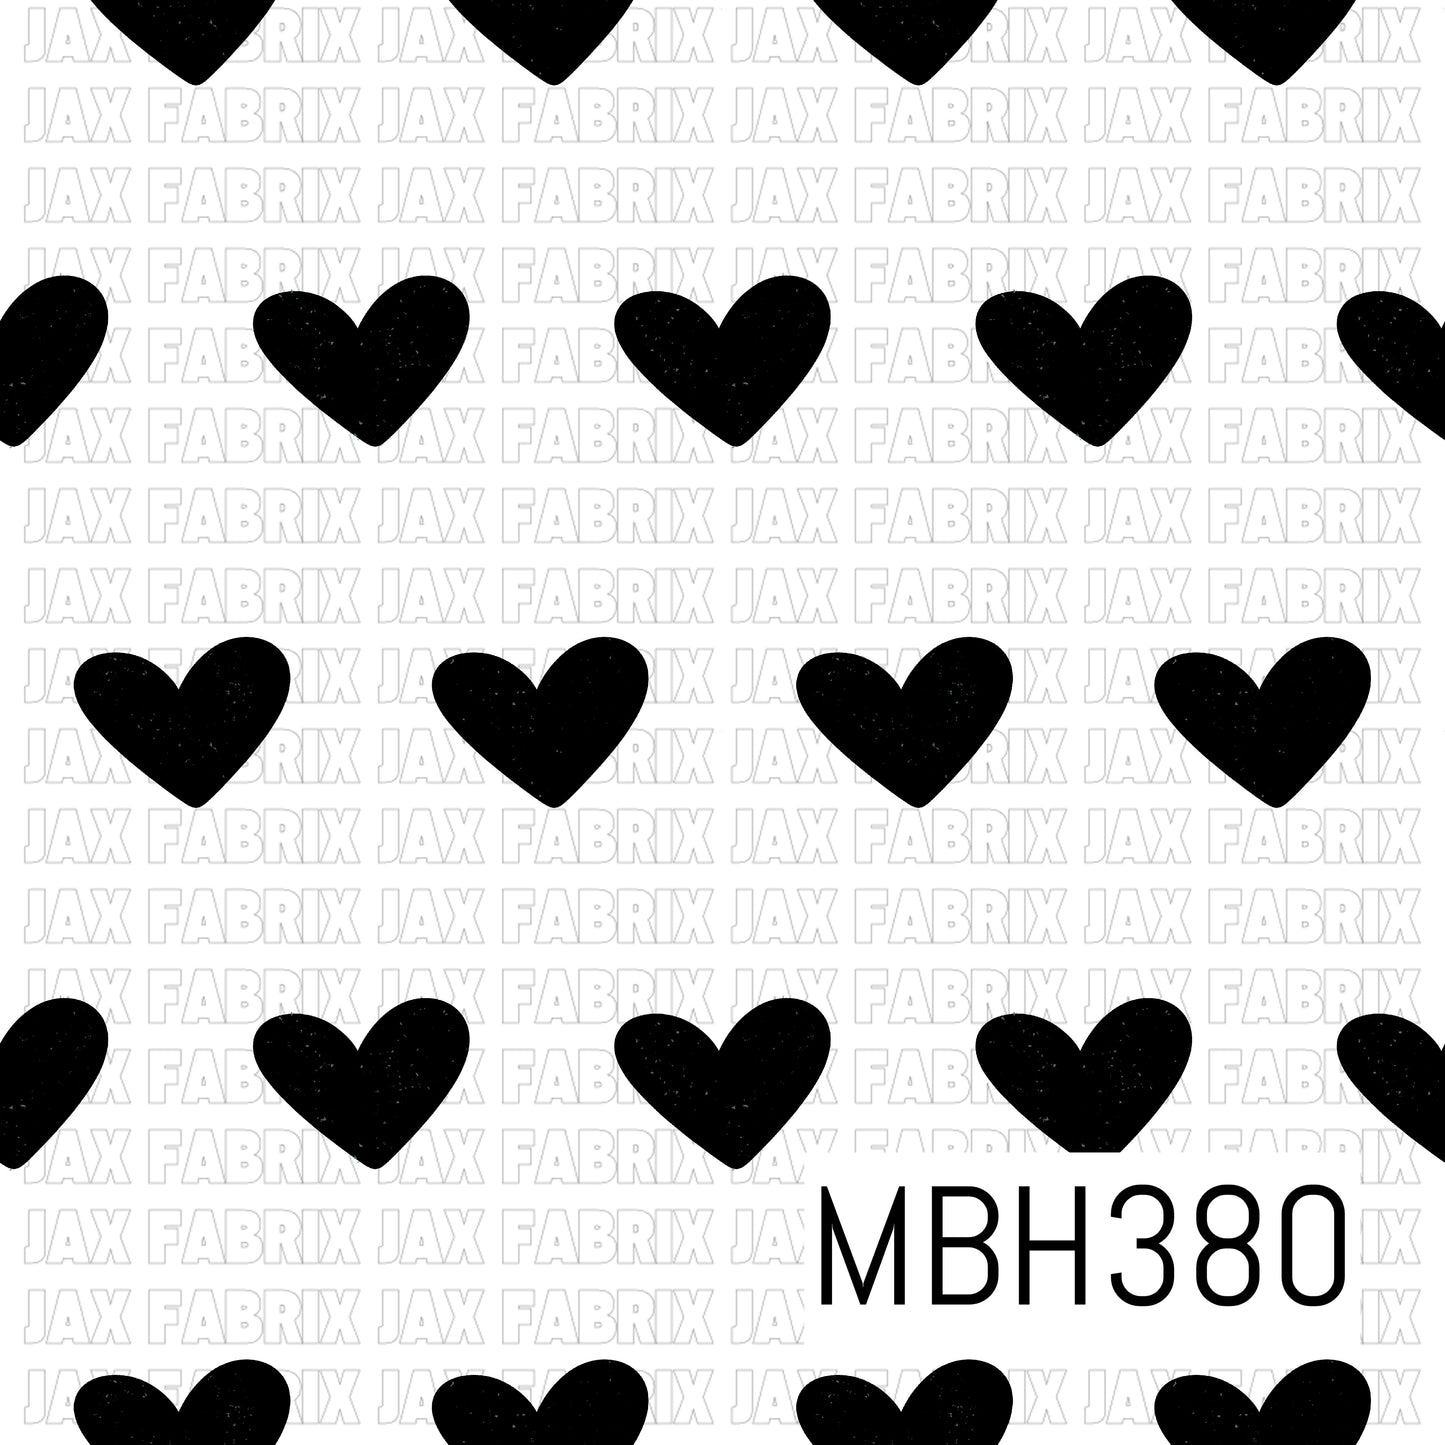 MBH380